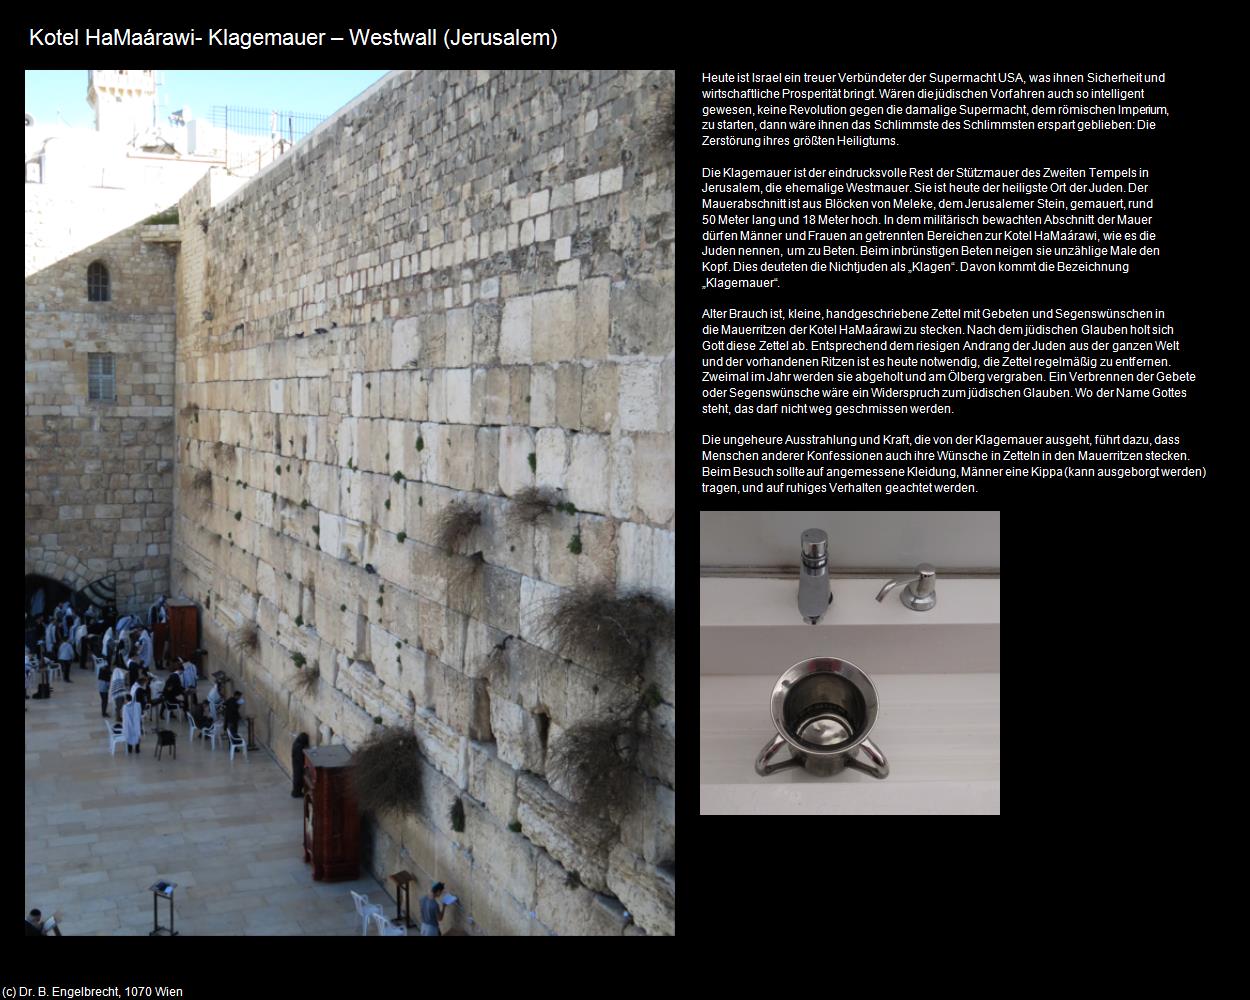 Kotel HaMaárawi- Klagemauer - Westwall  (Jerusalem) in Kulturatlas-ISRAEL